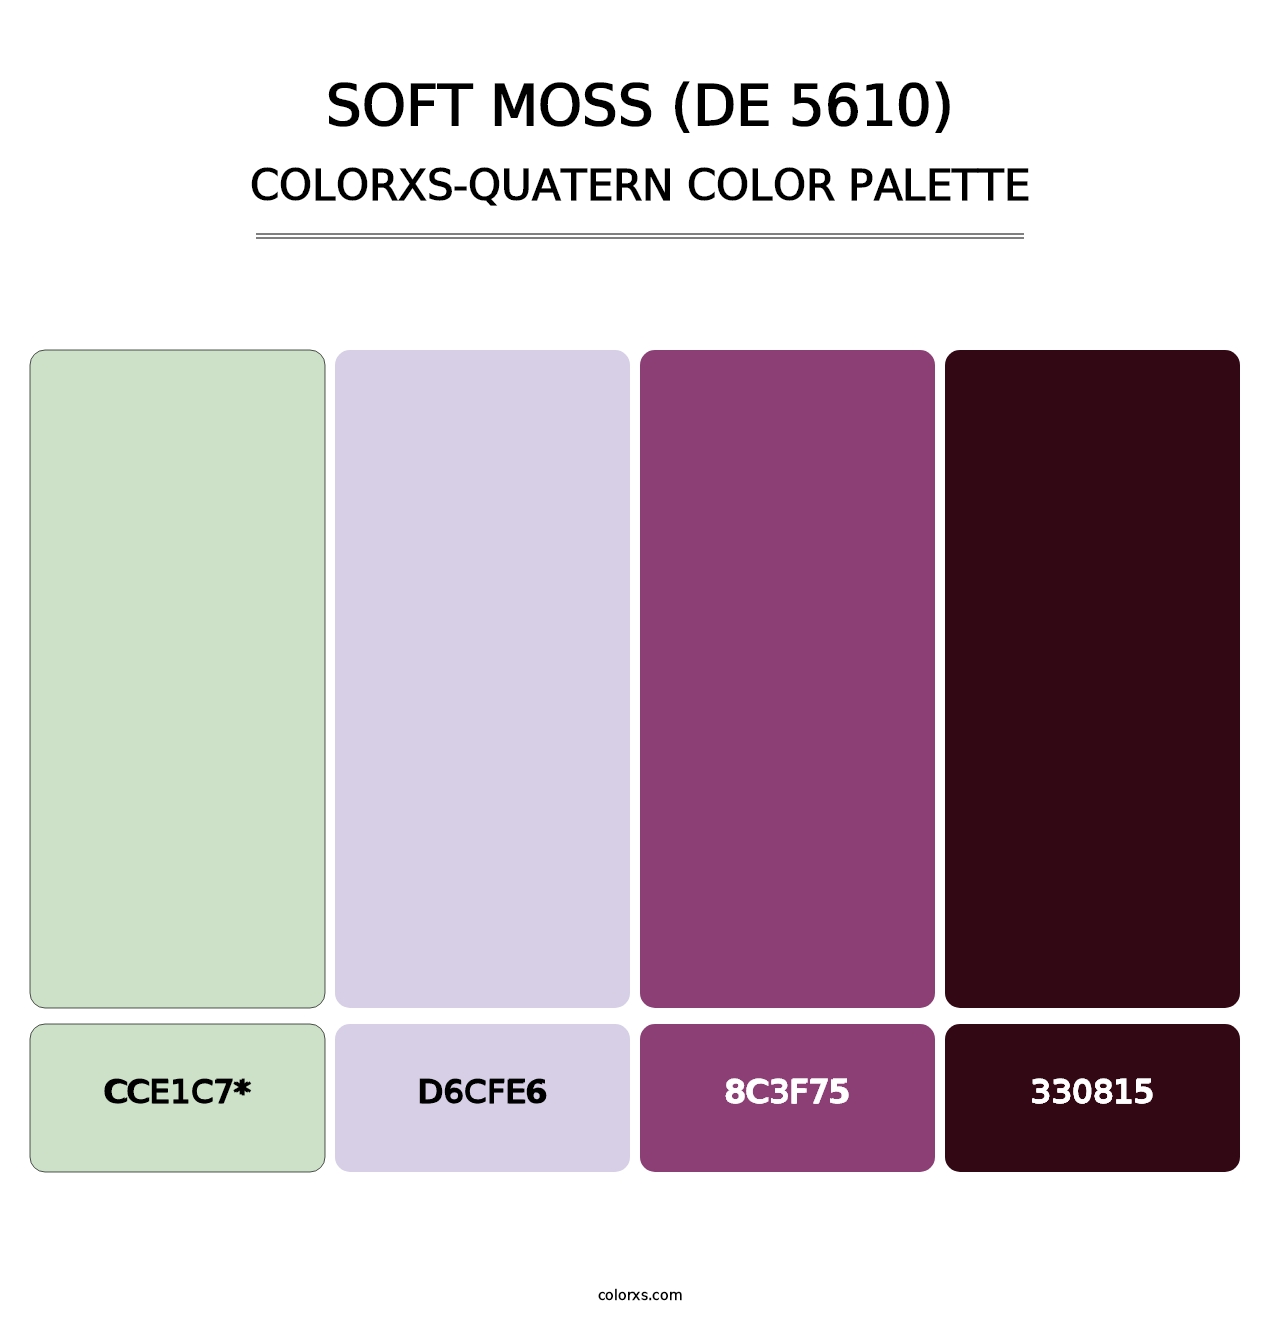 Soft Moss (DE 5610) - Colorxs Quatern Palette